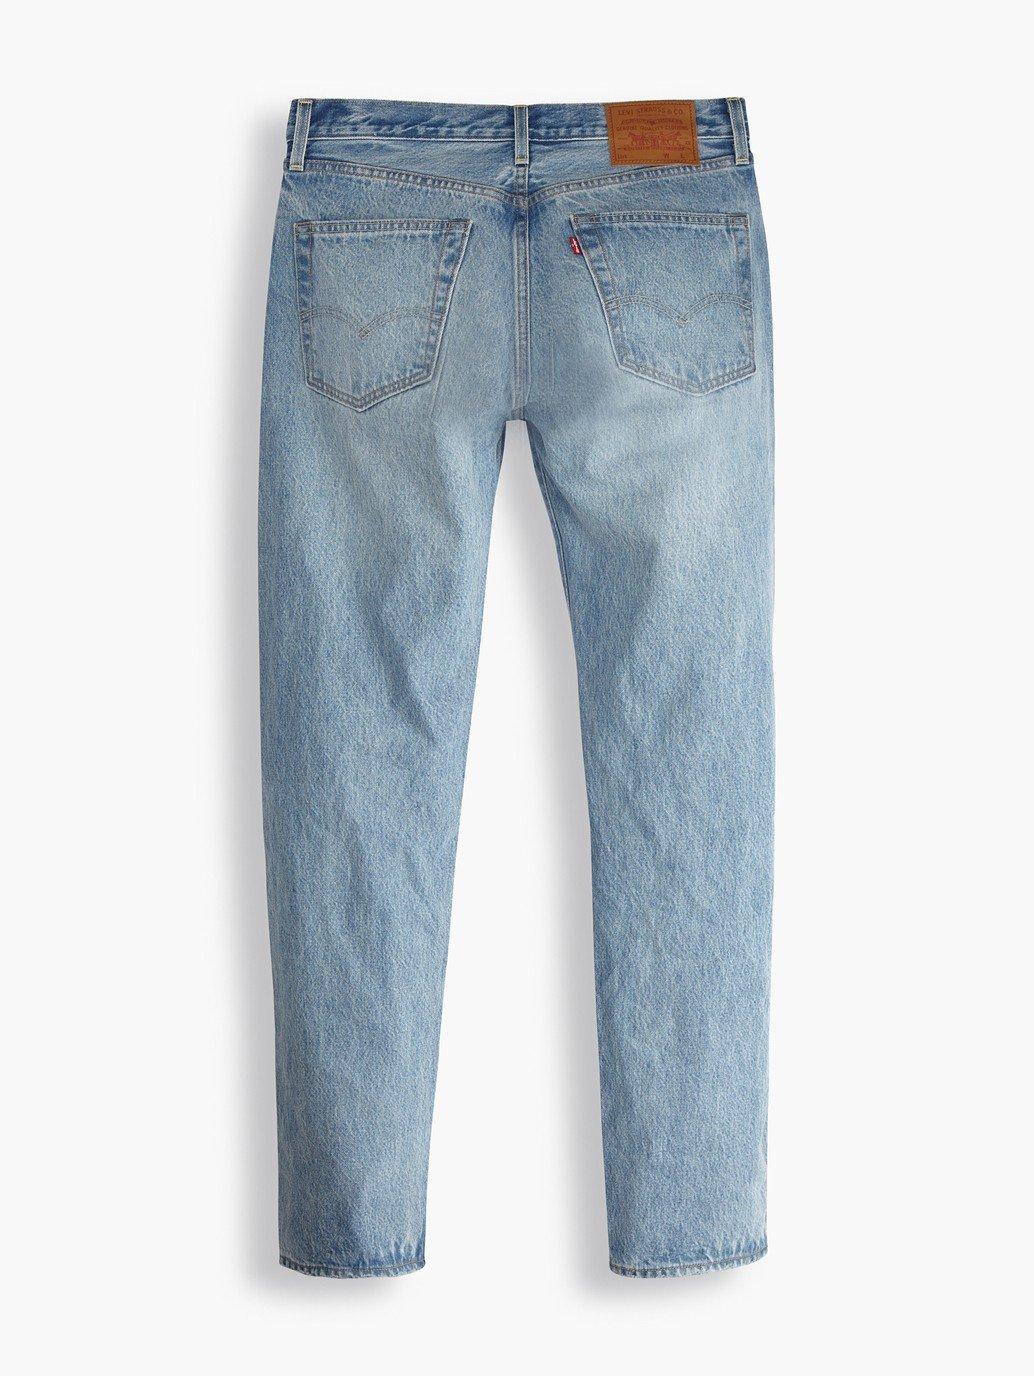 levis singapore mens 501 54 jeans A46770006 15 Details